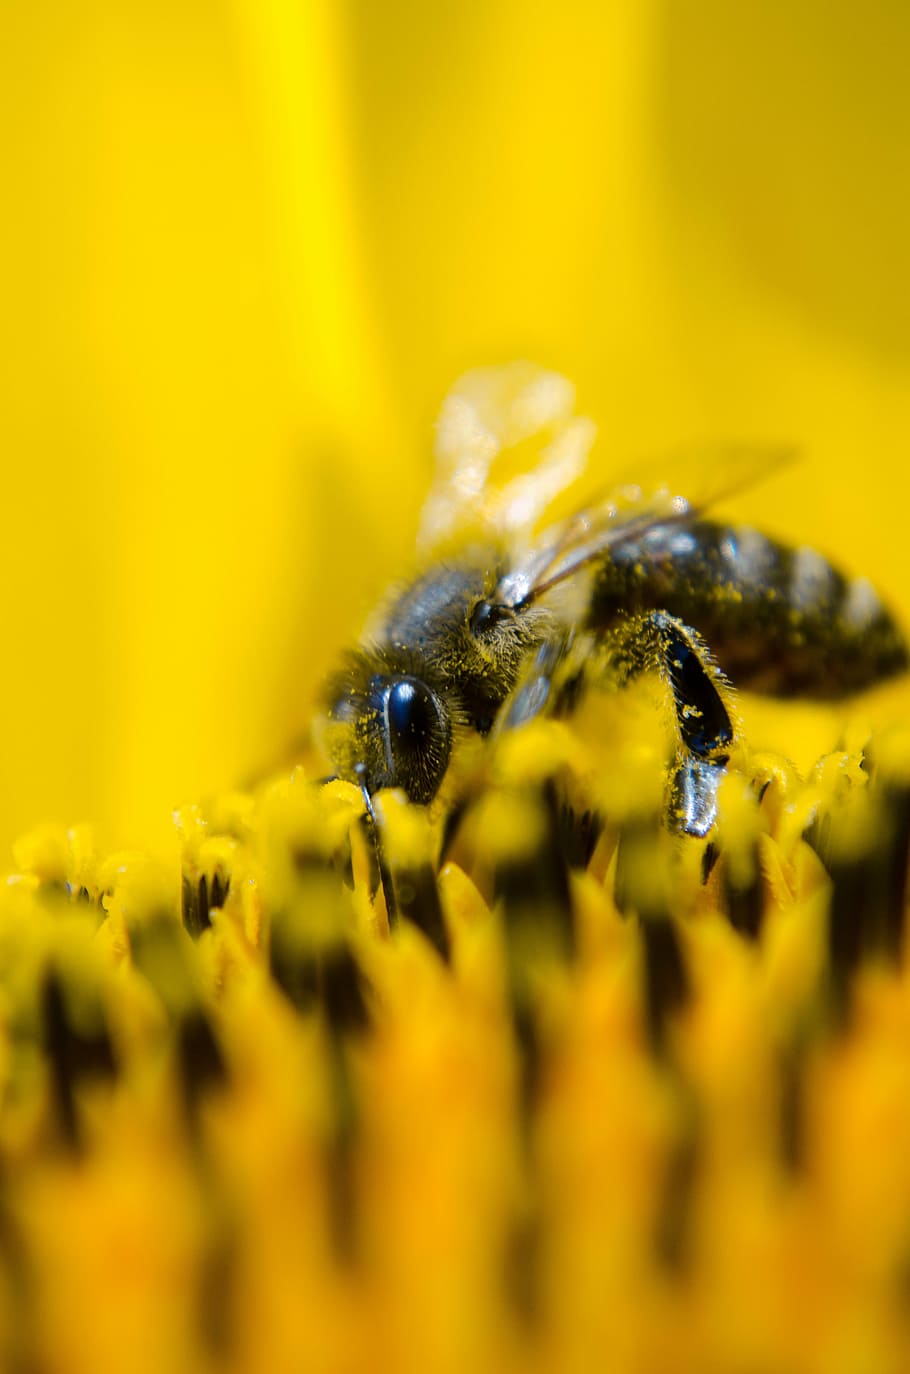 focal, fotografia de foco, polenização de abelhas, abelha, abelha trabalhando, natureza, girassol, amarelo, pólen, inseto